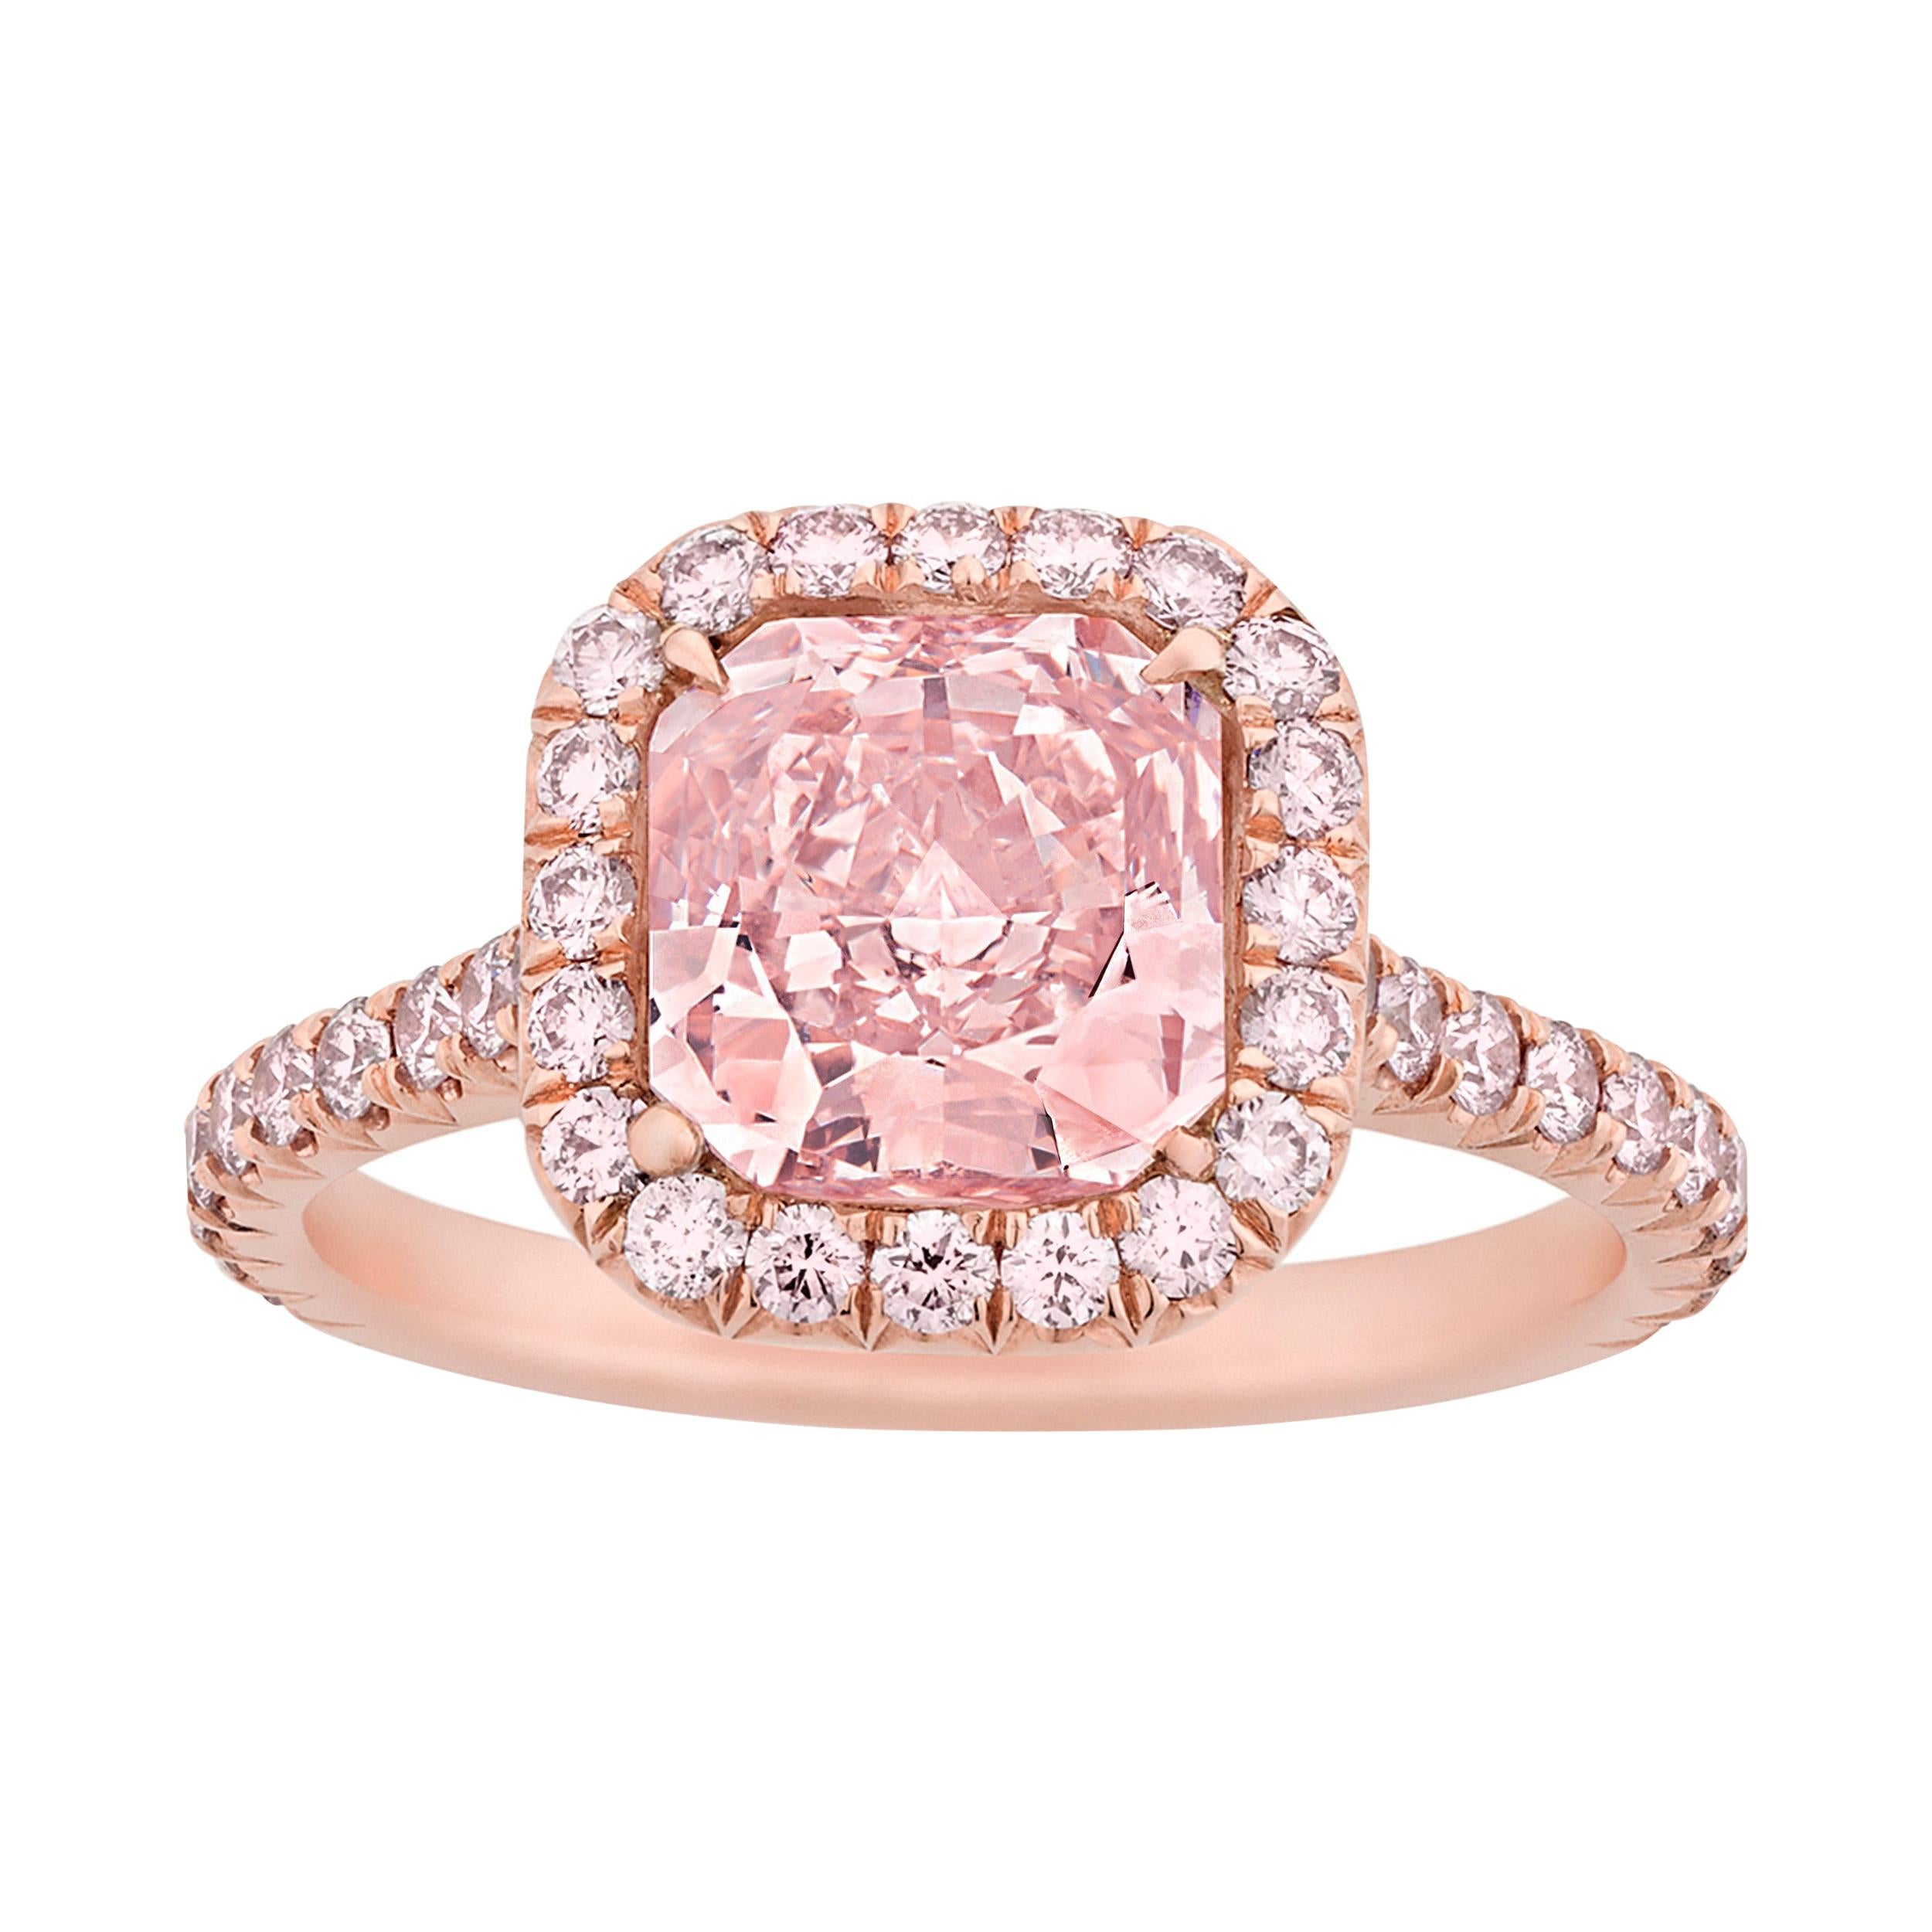 Natural Fancy Pink Diamond Ring, 2.01 Carat